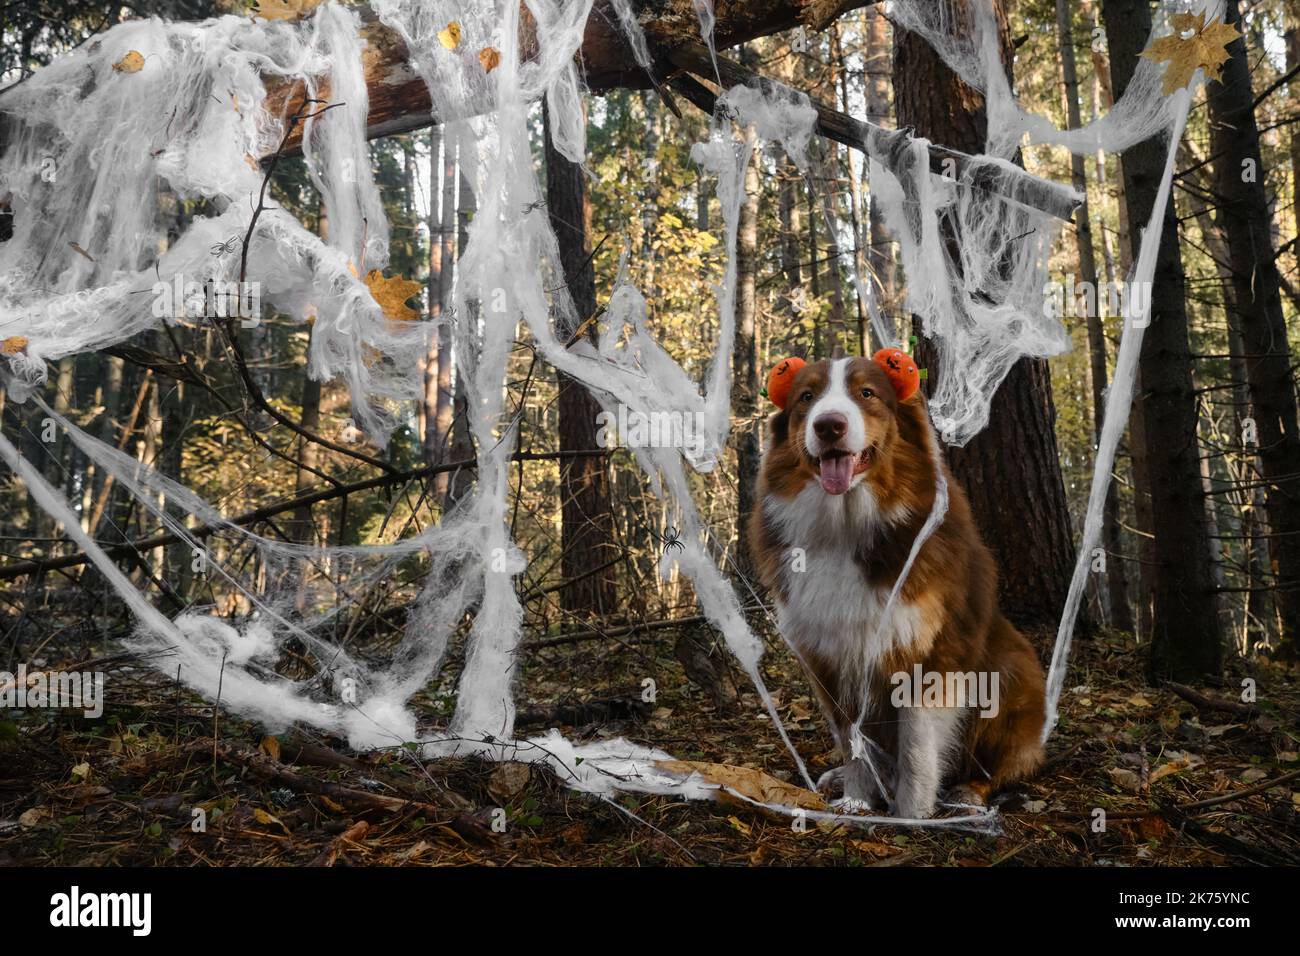 El perro pastor australiano sonríe y celebra Halloween en el bosque. Aussie se sienta y usa diadema con calabazas de color naranja, tela de araña de decoración en otoño Foto de stock